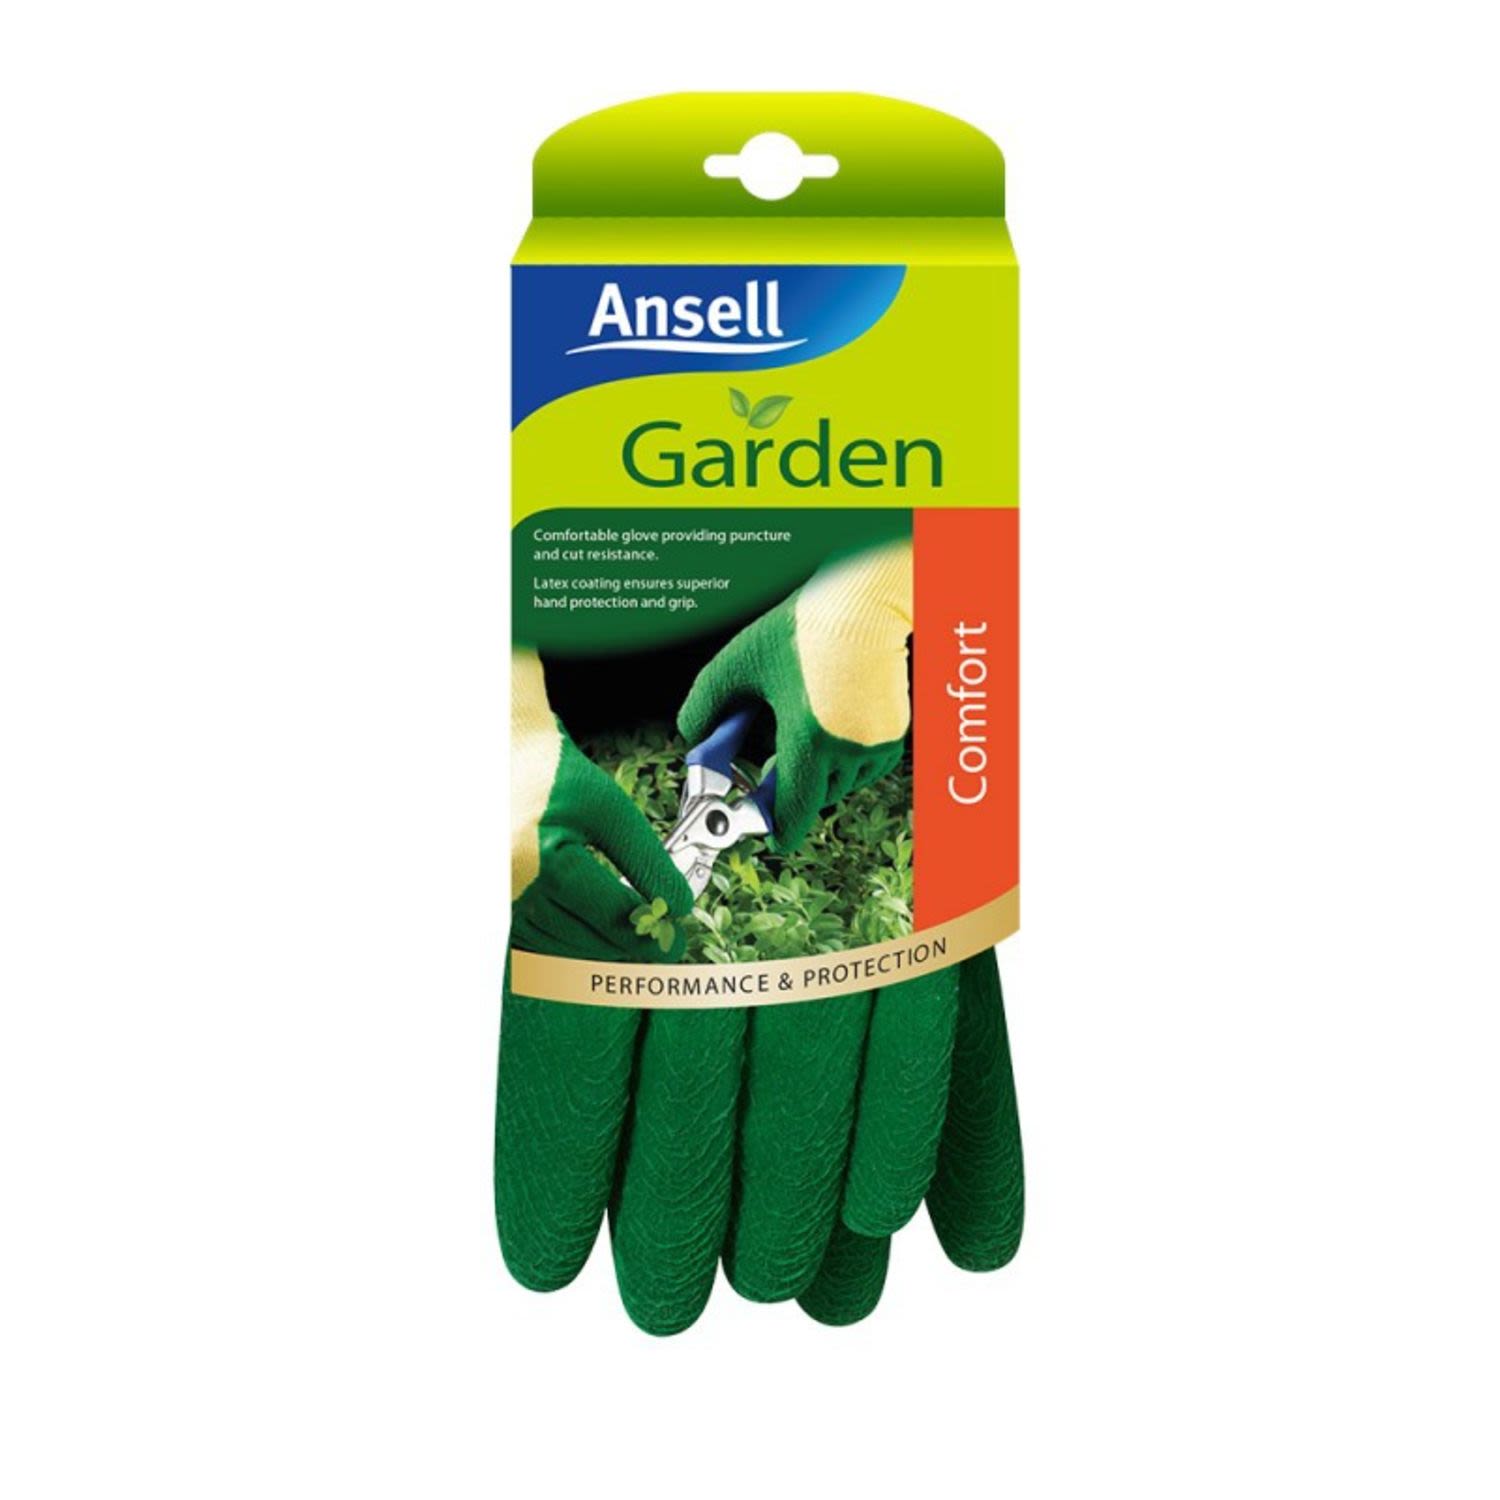 Ansell Glove Garden Comfort Large, 1 Each